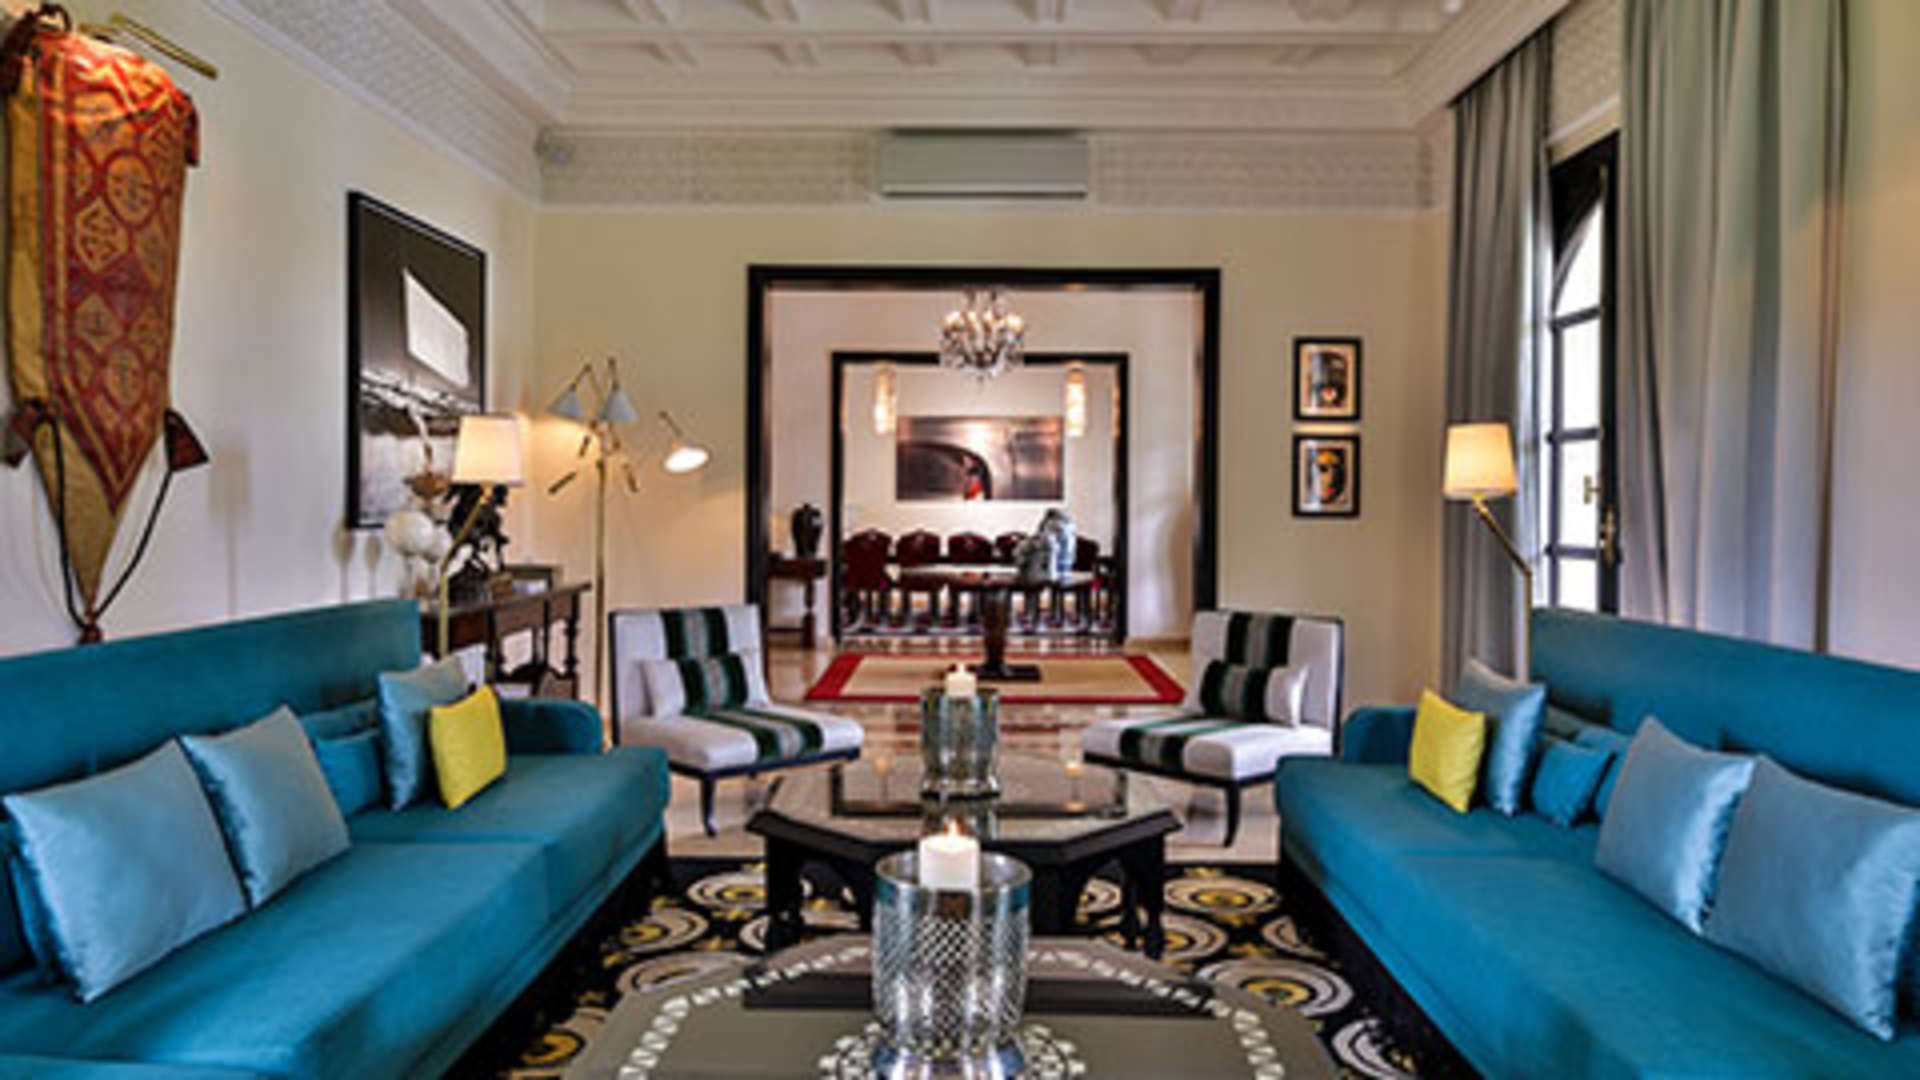 Location de vacances,Villa,Magnifique demeure privée et sécurisée de luxe dans la Palmeraie 6 suites avec services d’exception.,Marrakech,Bab Atlas